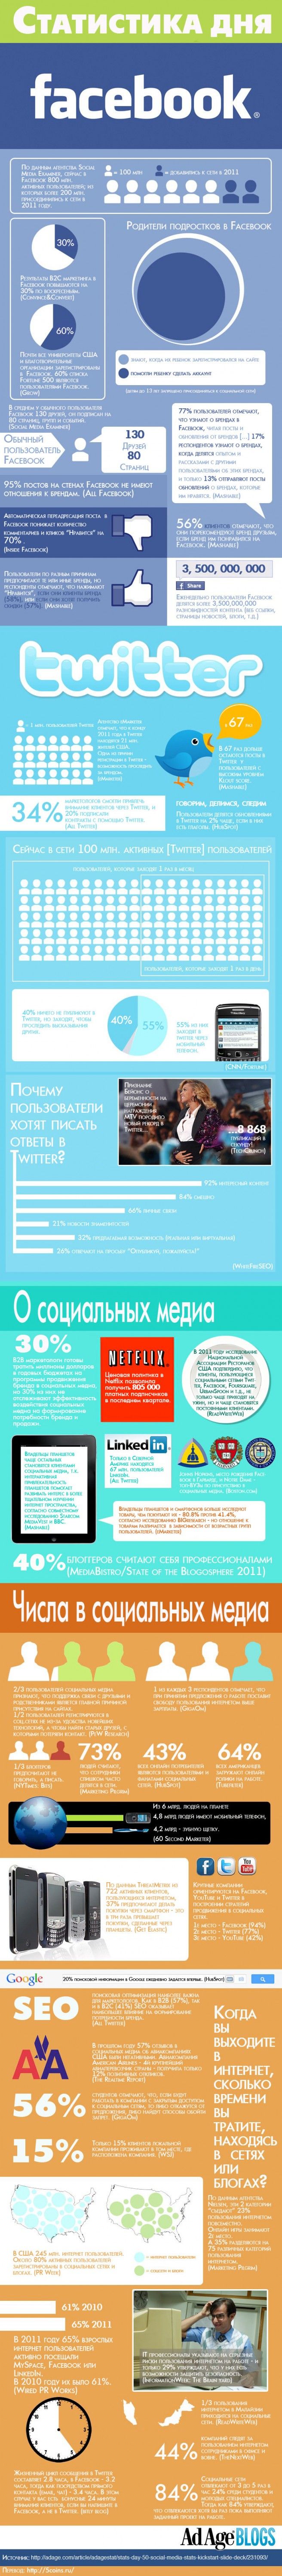 Итоги 2011 года в социальных медиа